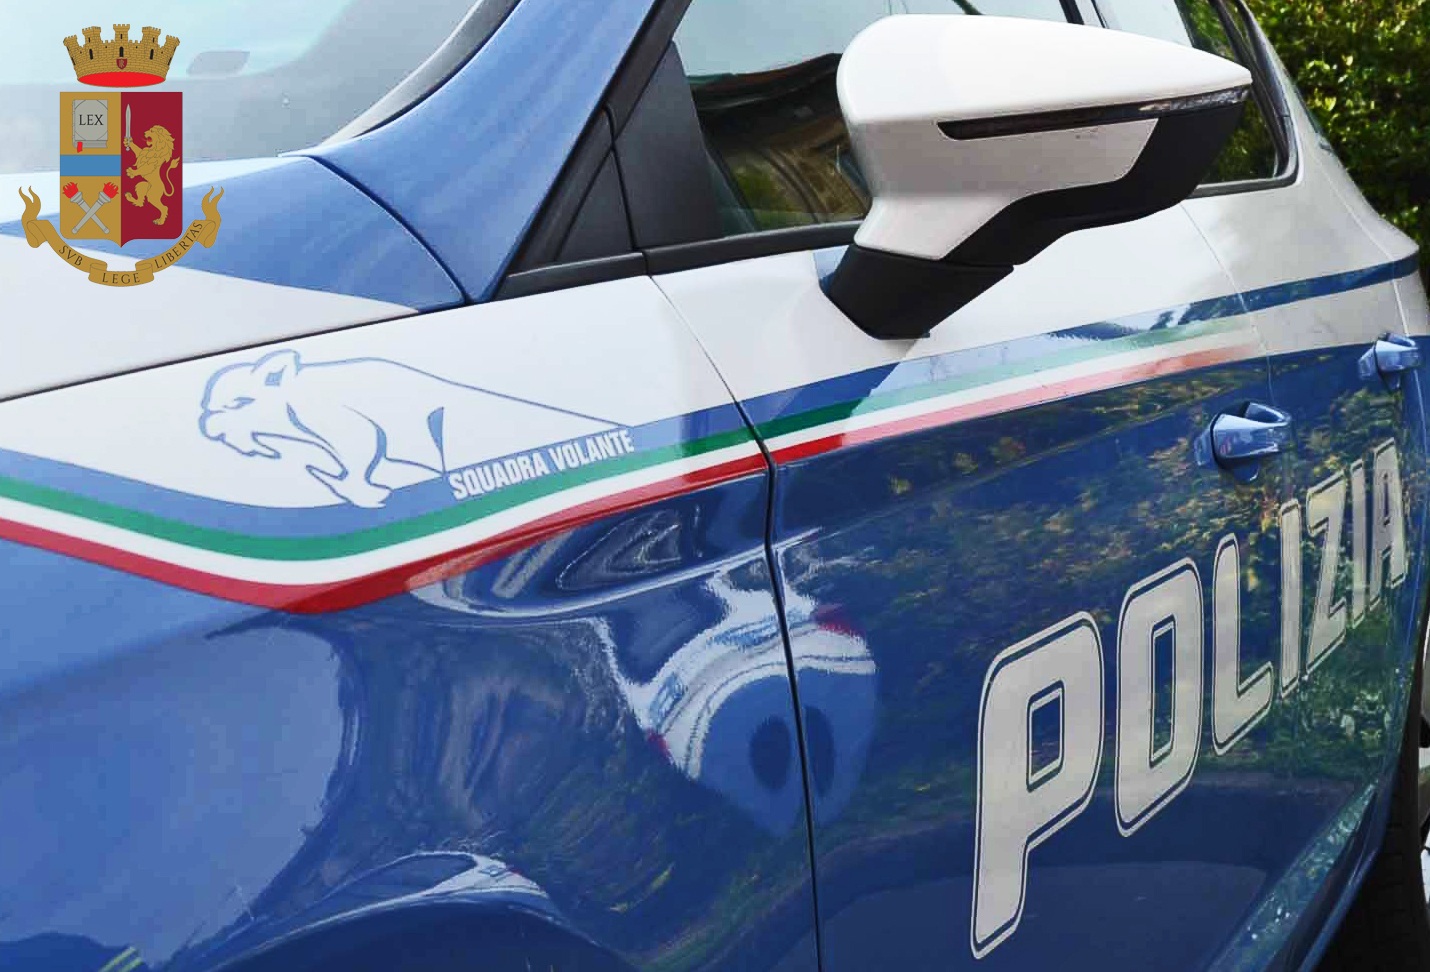 Milano, rompe la catena di una bici per rubarla: la Polizia di Stato lo arresta.